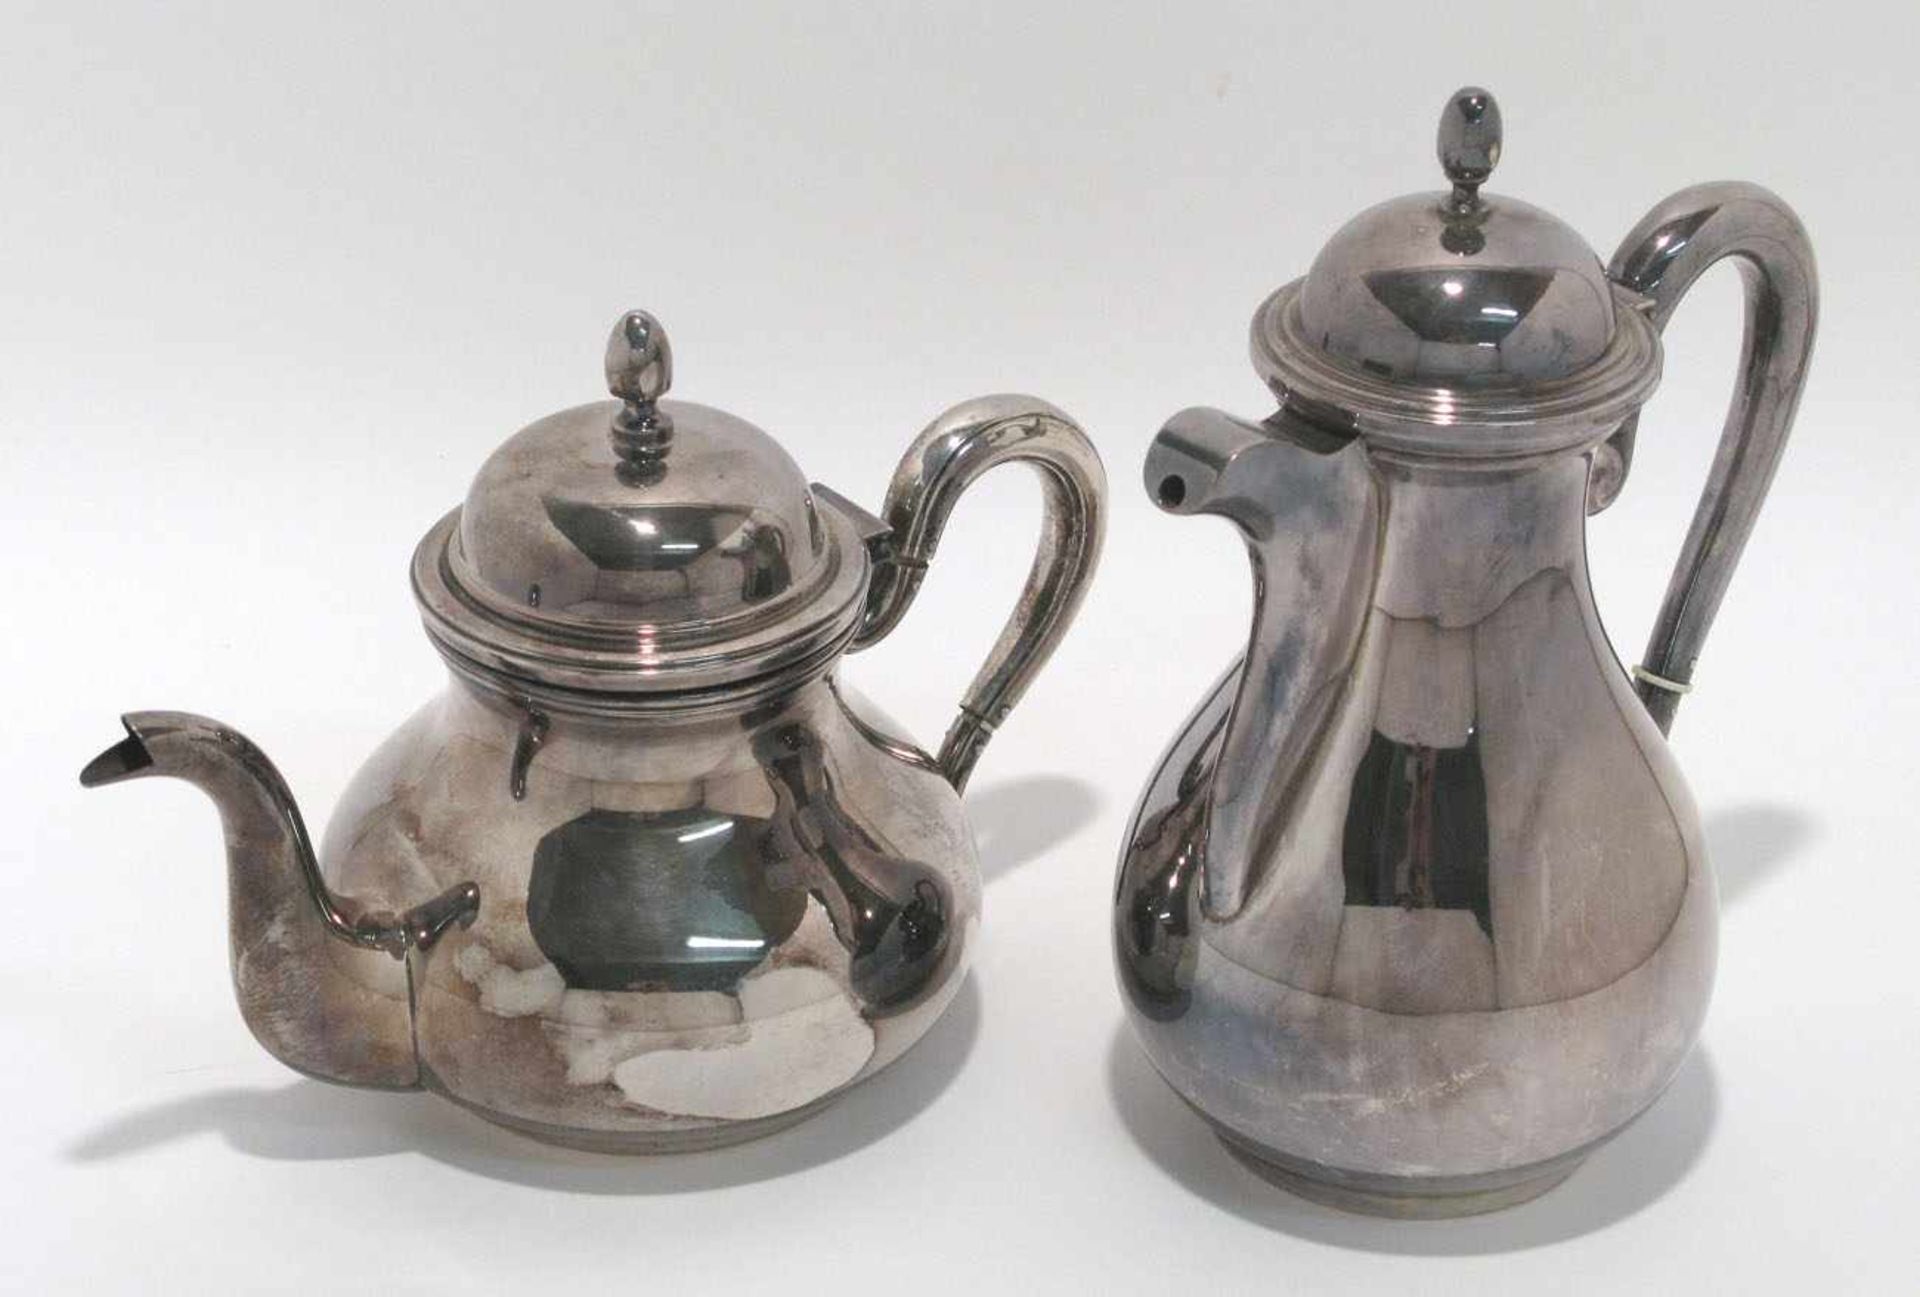 Kaffee- und Teekanne Italien. Silber. Glatte Birnform mit Schnabel- bzw. Röhrenausguss.